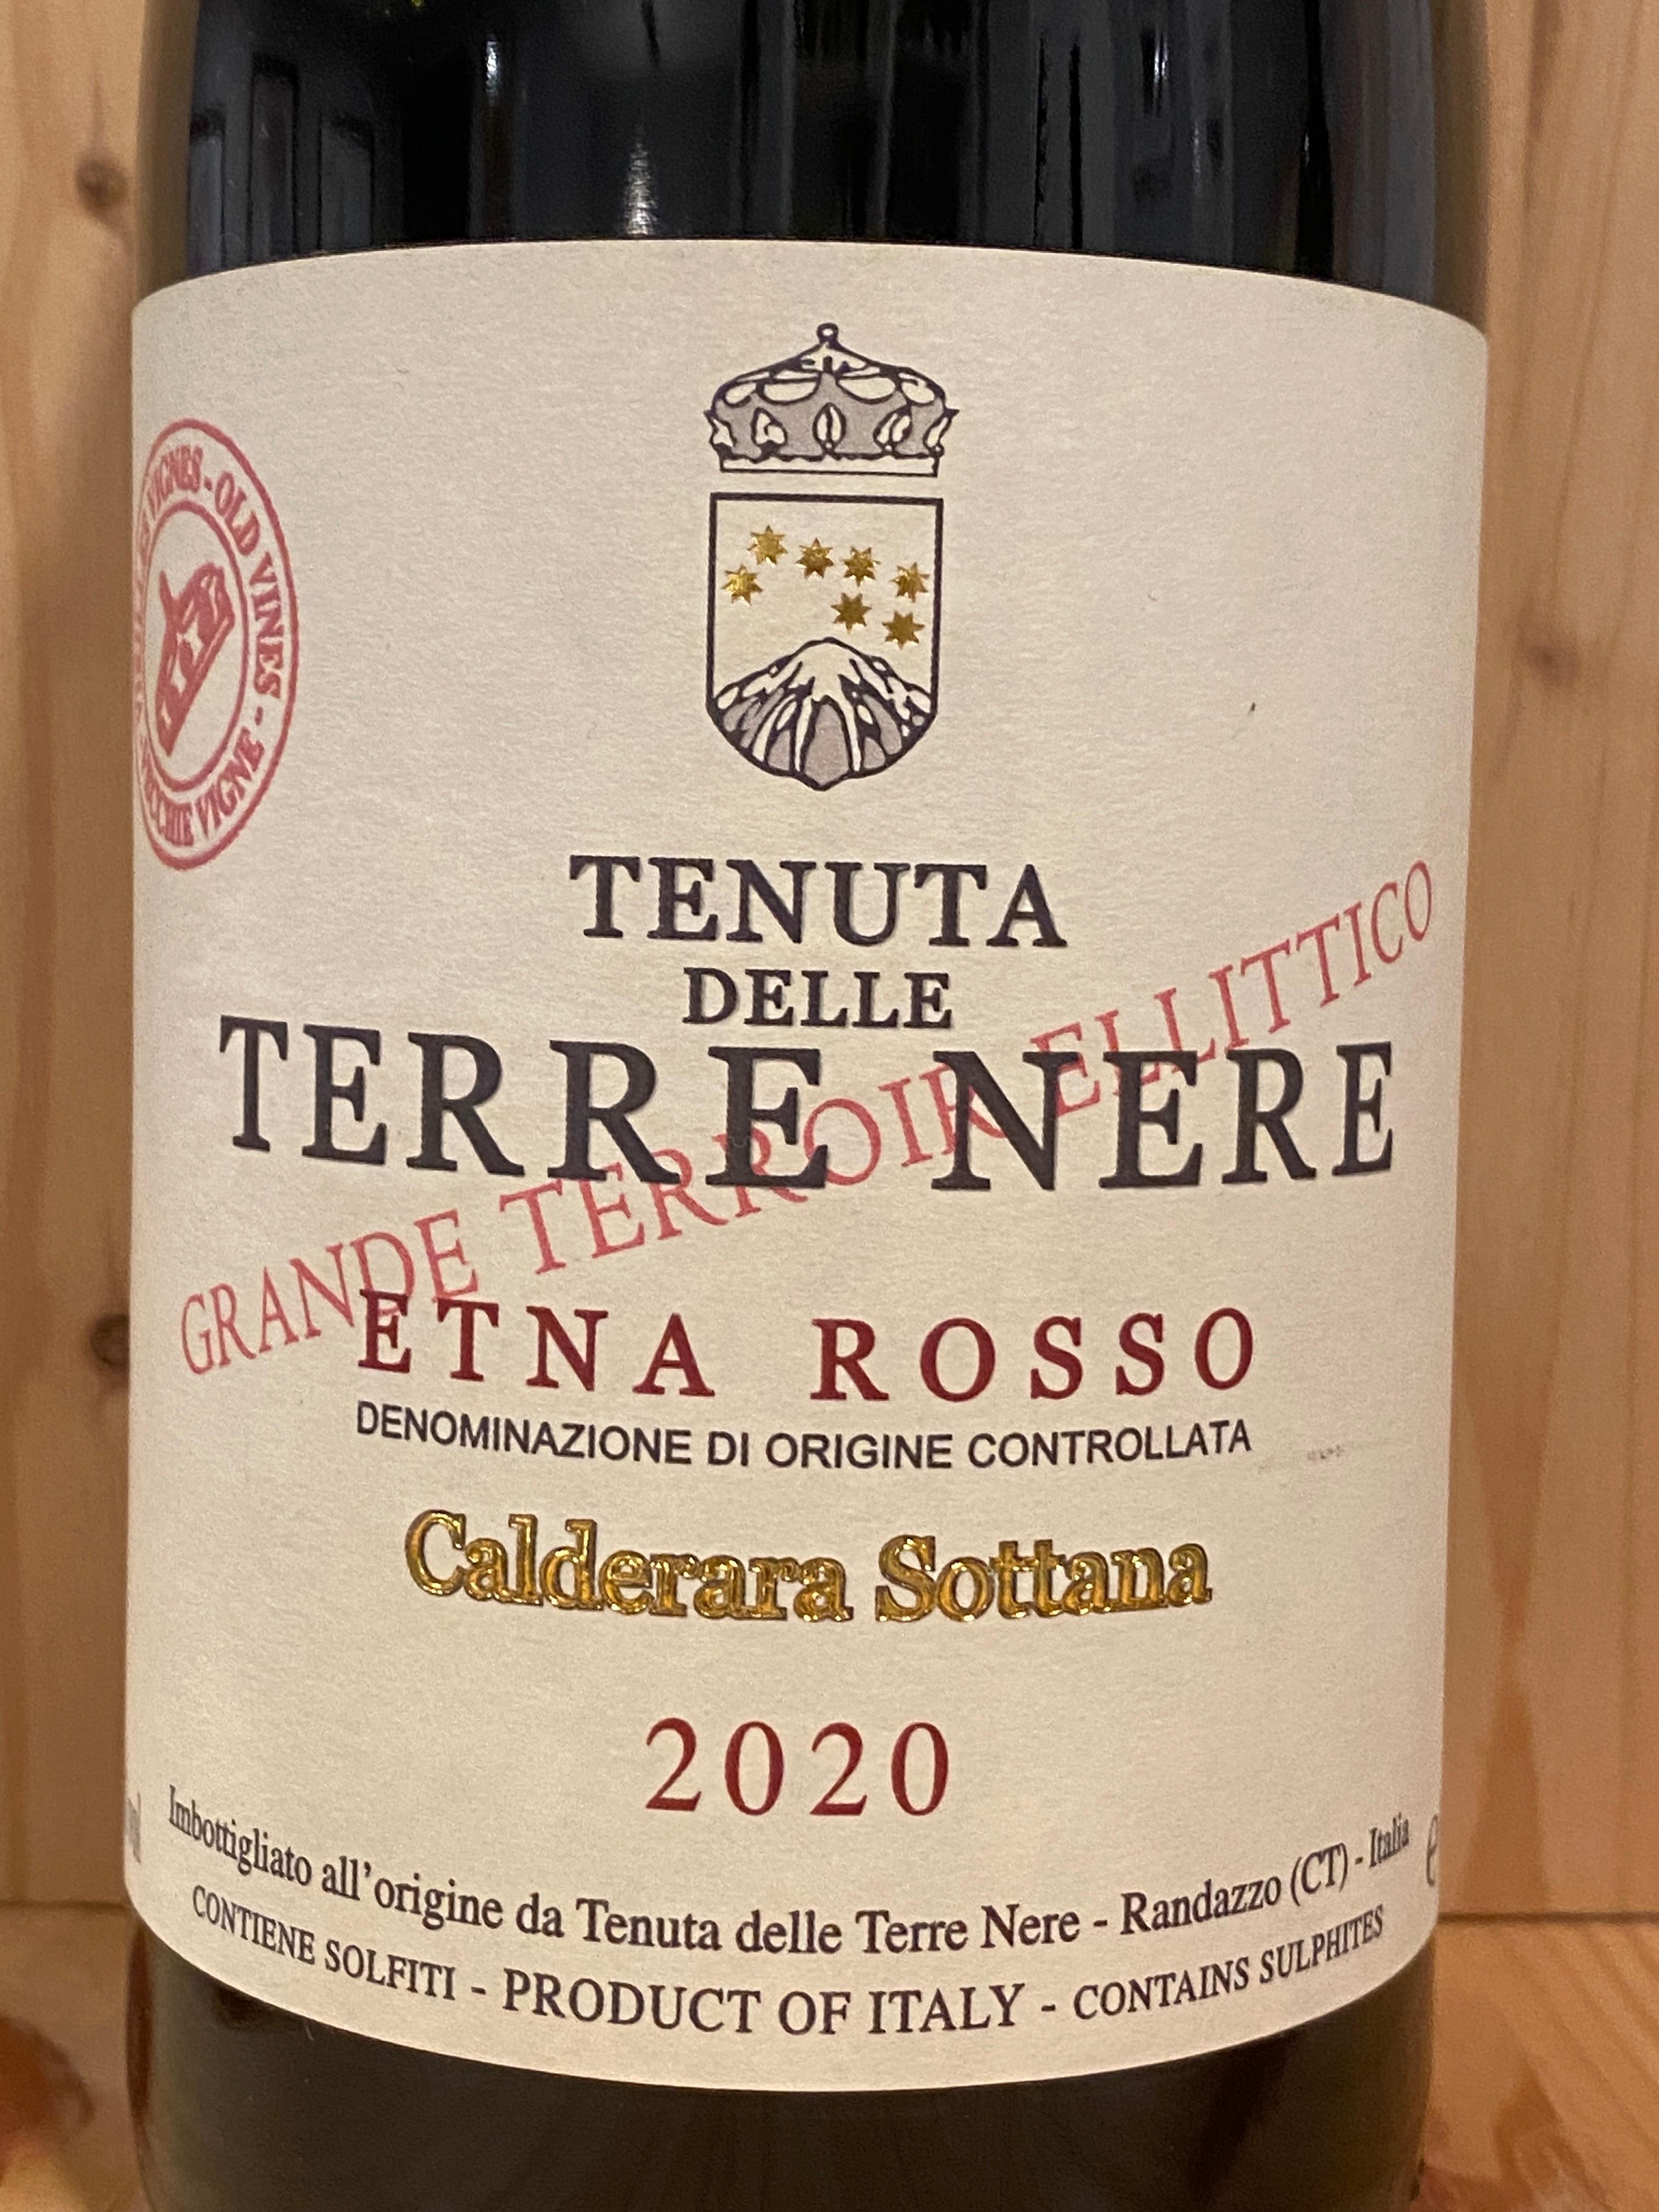 Tenuta delle Terre Nere Etna Rosso Calderara Sottana Vecchie Vigne 2020: Sicily, Italy